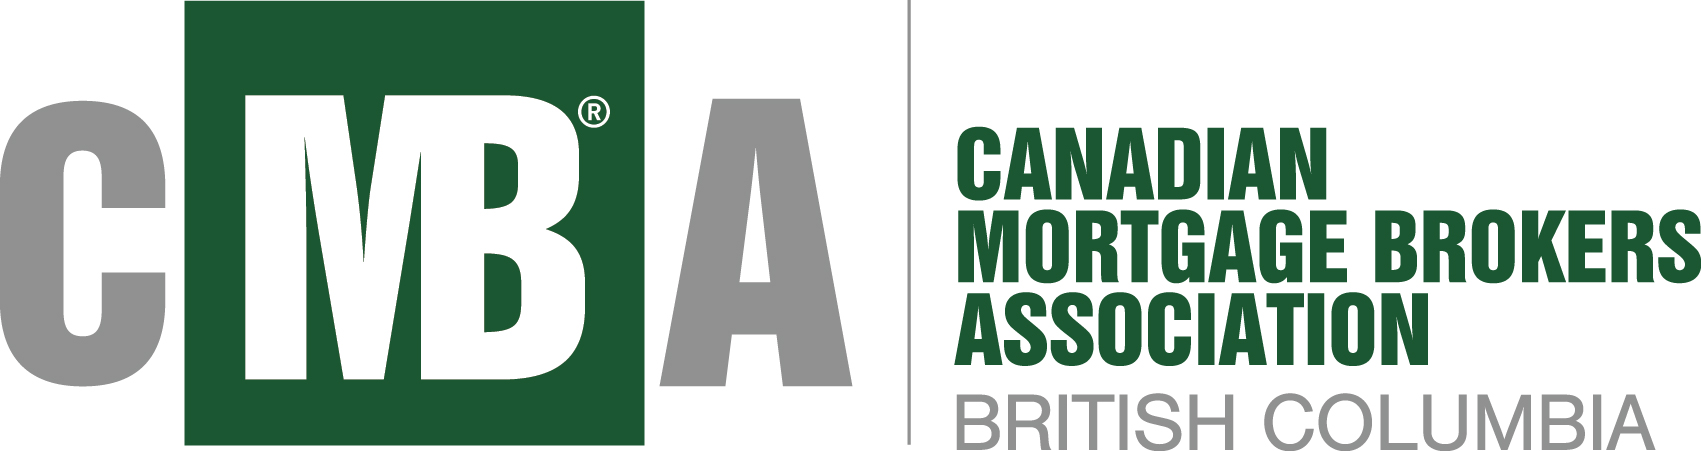 CMBA_logo-BC